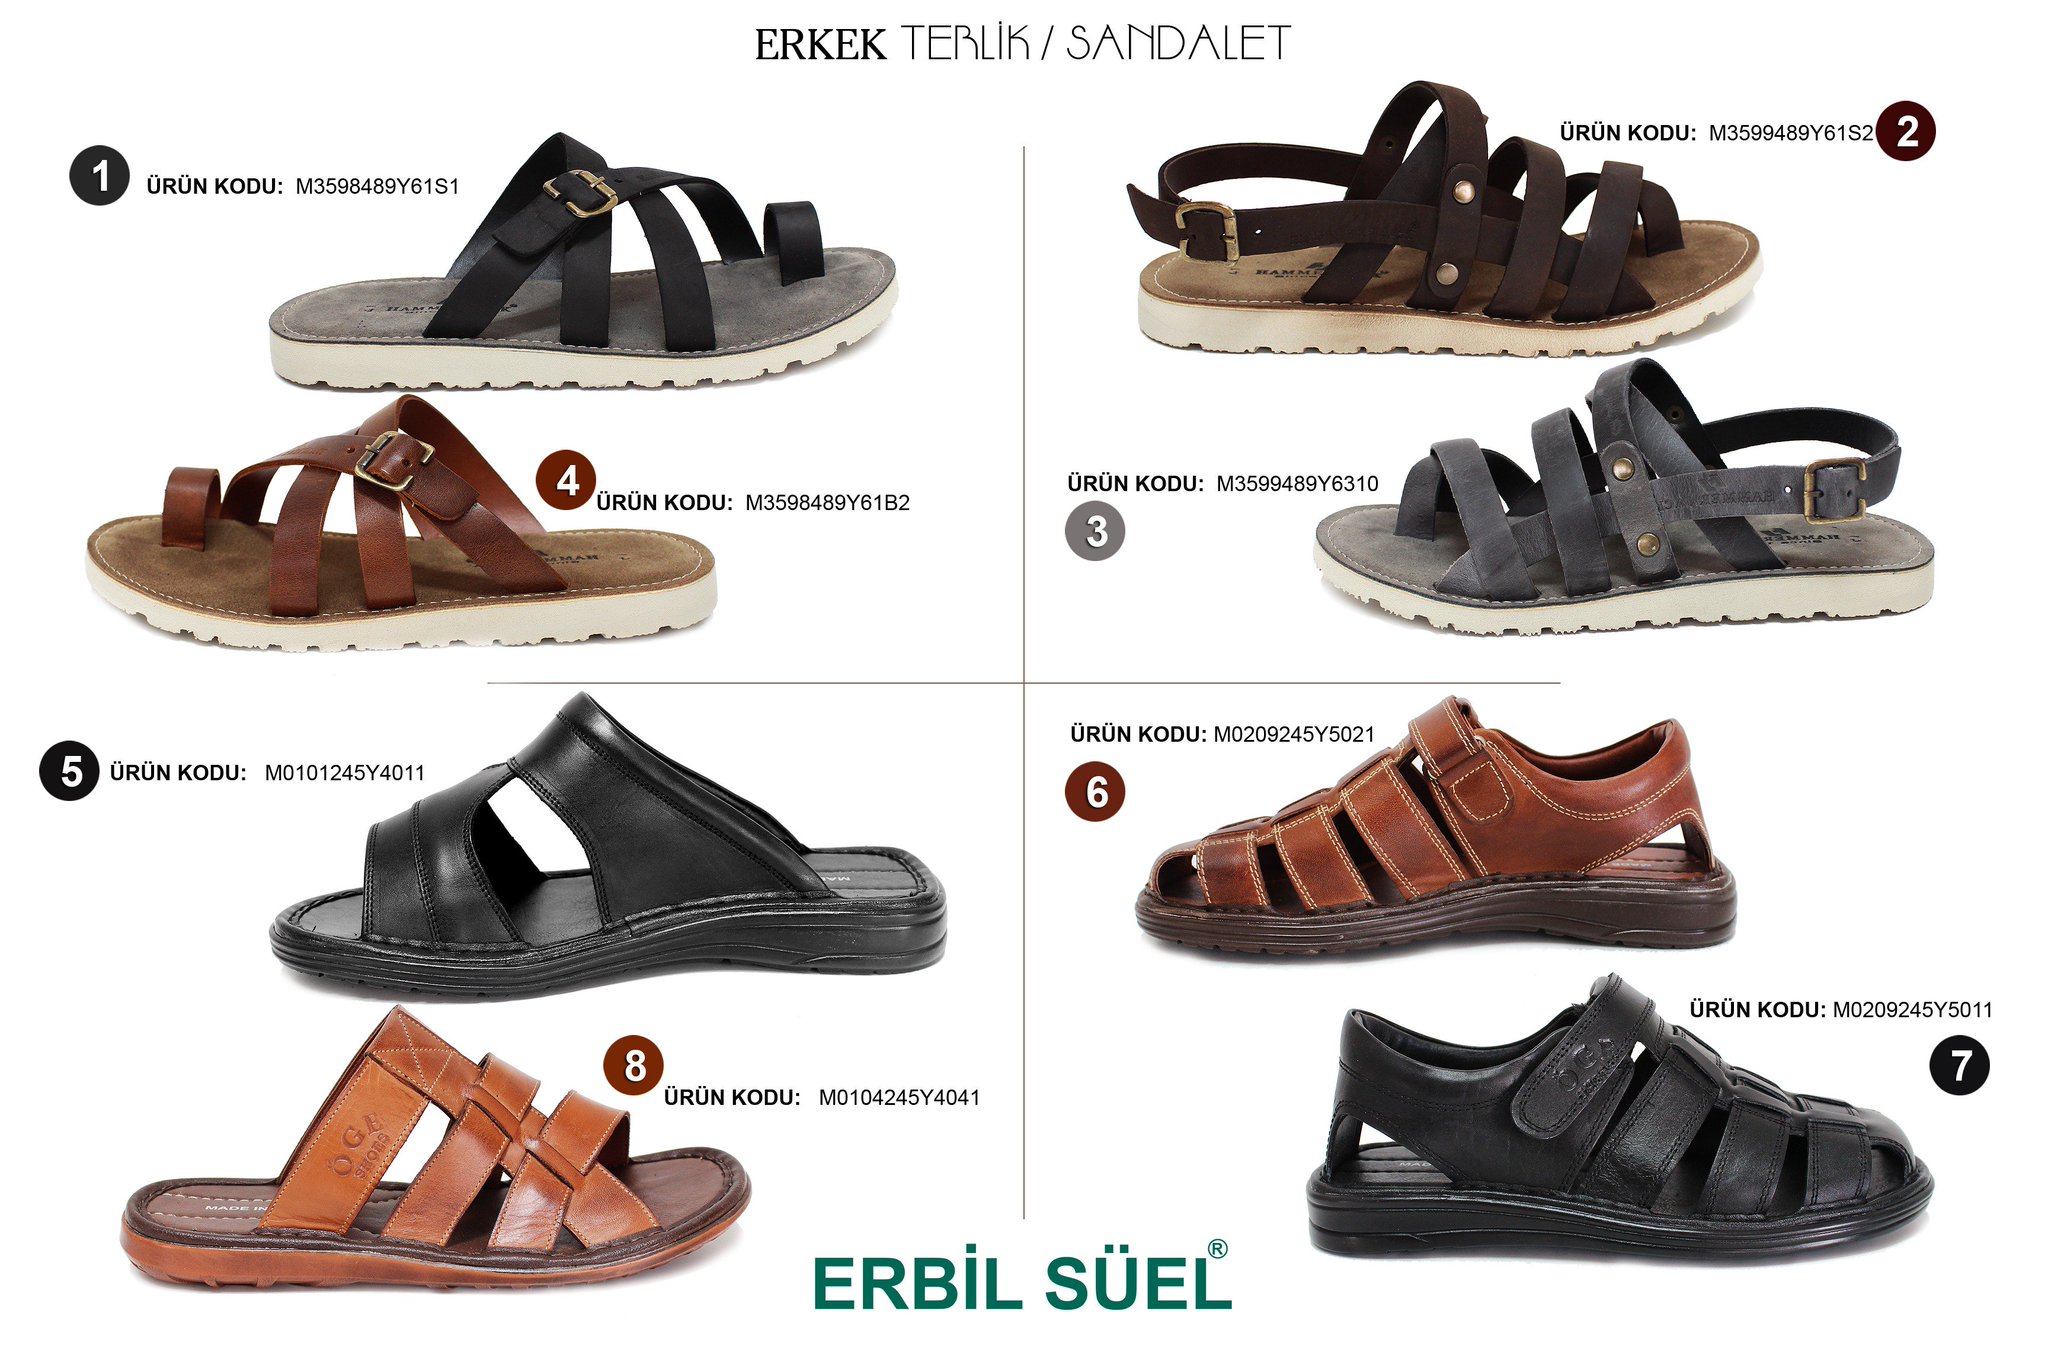 Erbil Süel® Ayakkabı ™ on X: "Birbirinden farklı şık ve rahat #Erkek  #Sandalet #Terlik modelleri sizleri bekliyor ☟ https://t.co/iBYDCEcpy8" / X